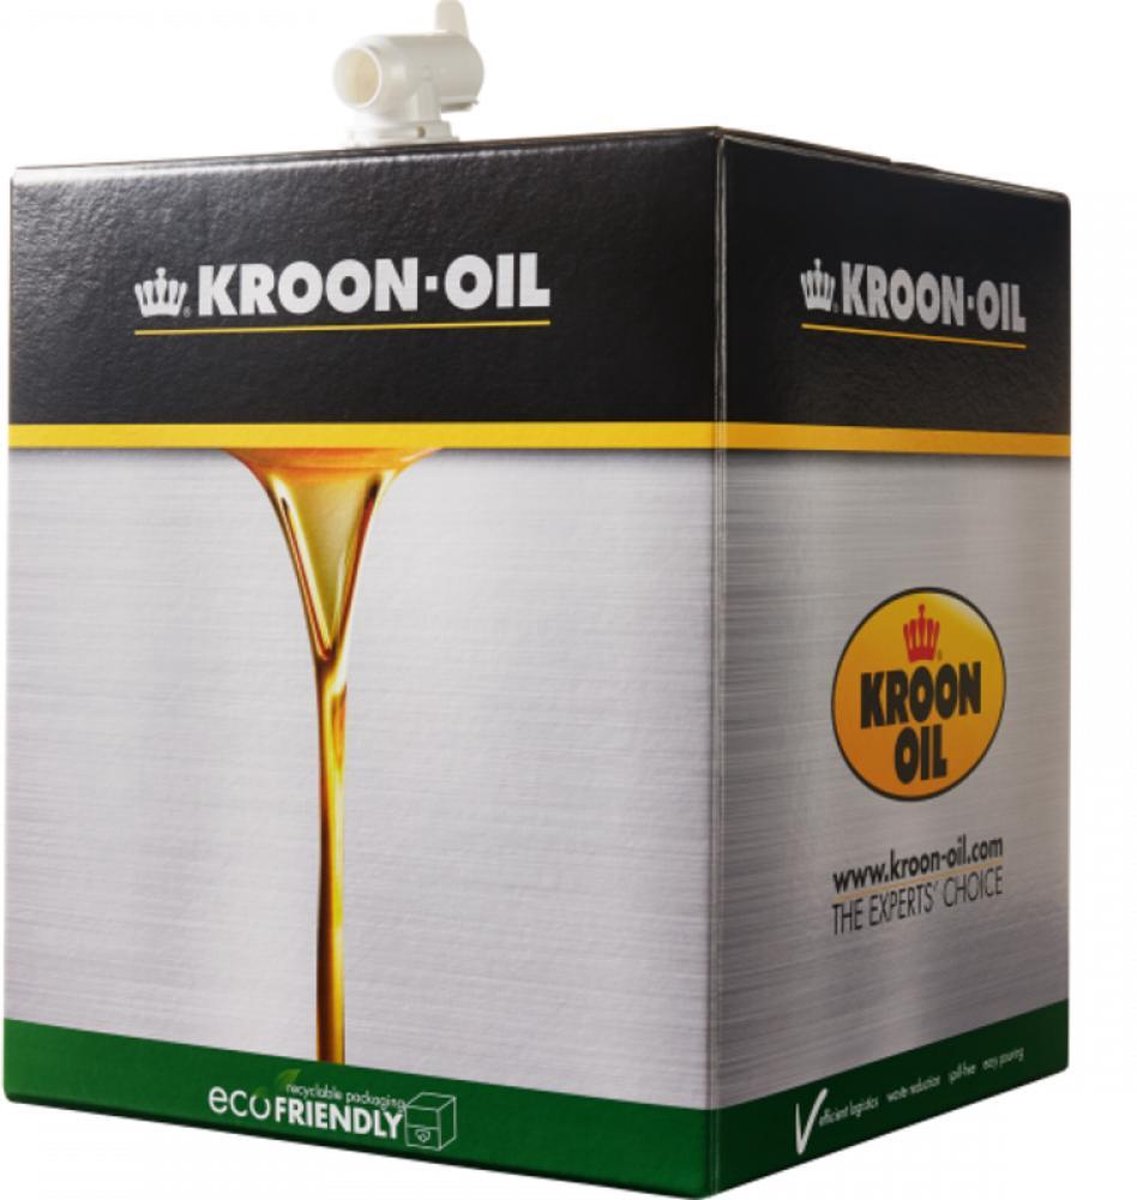 Kroon-Oil Synfleet SHPD 10W-40 - 32718 | 20 L Bag in Box